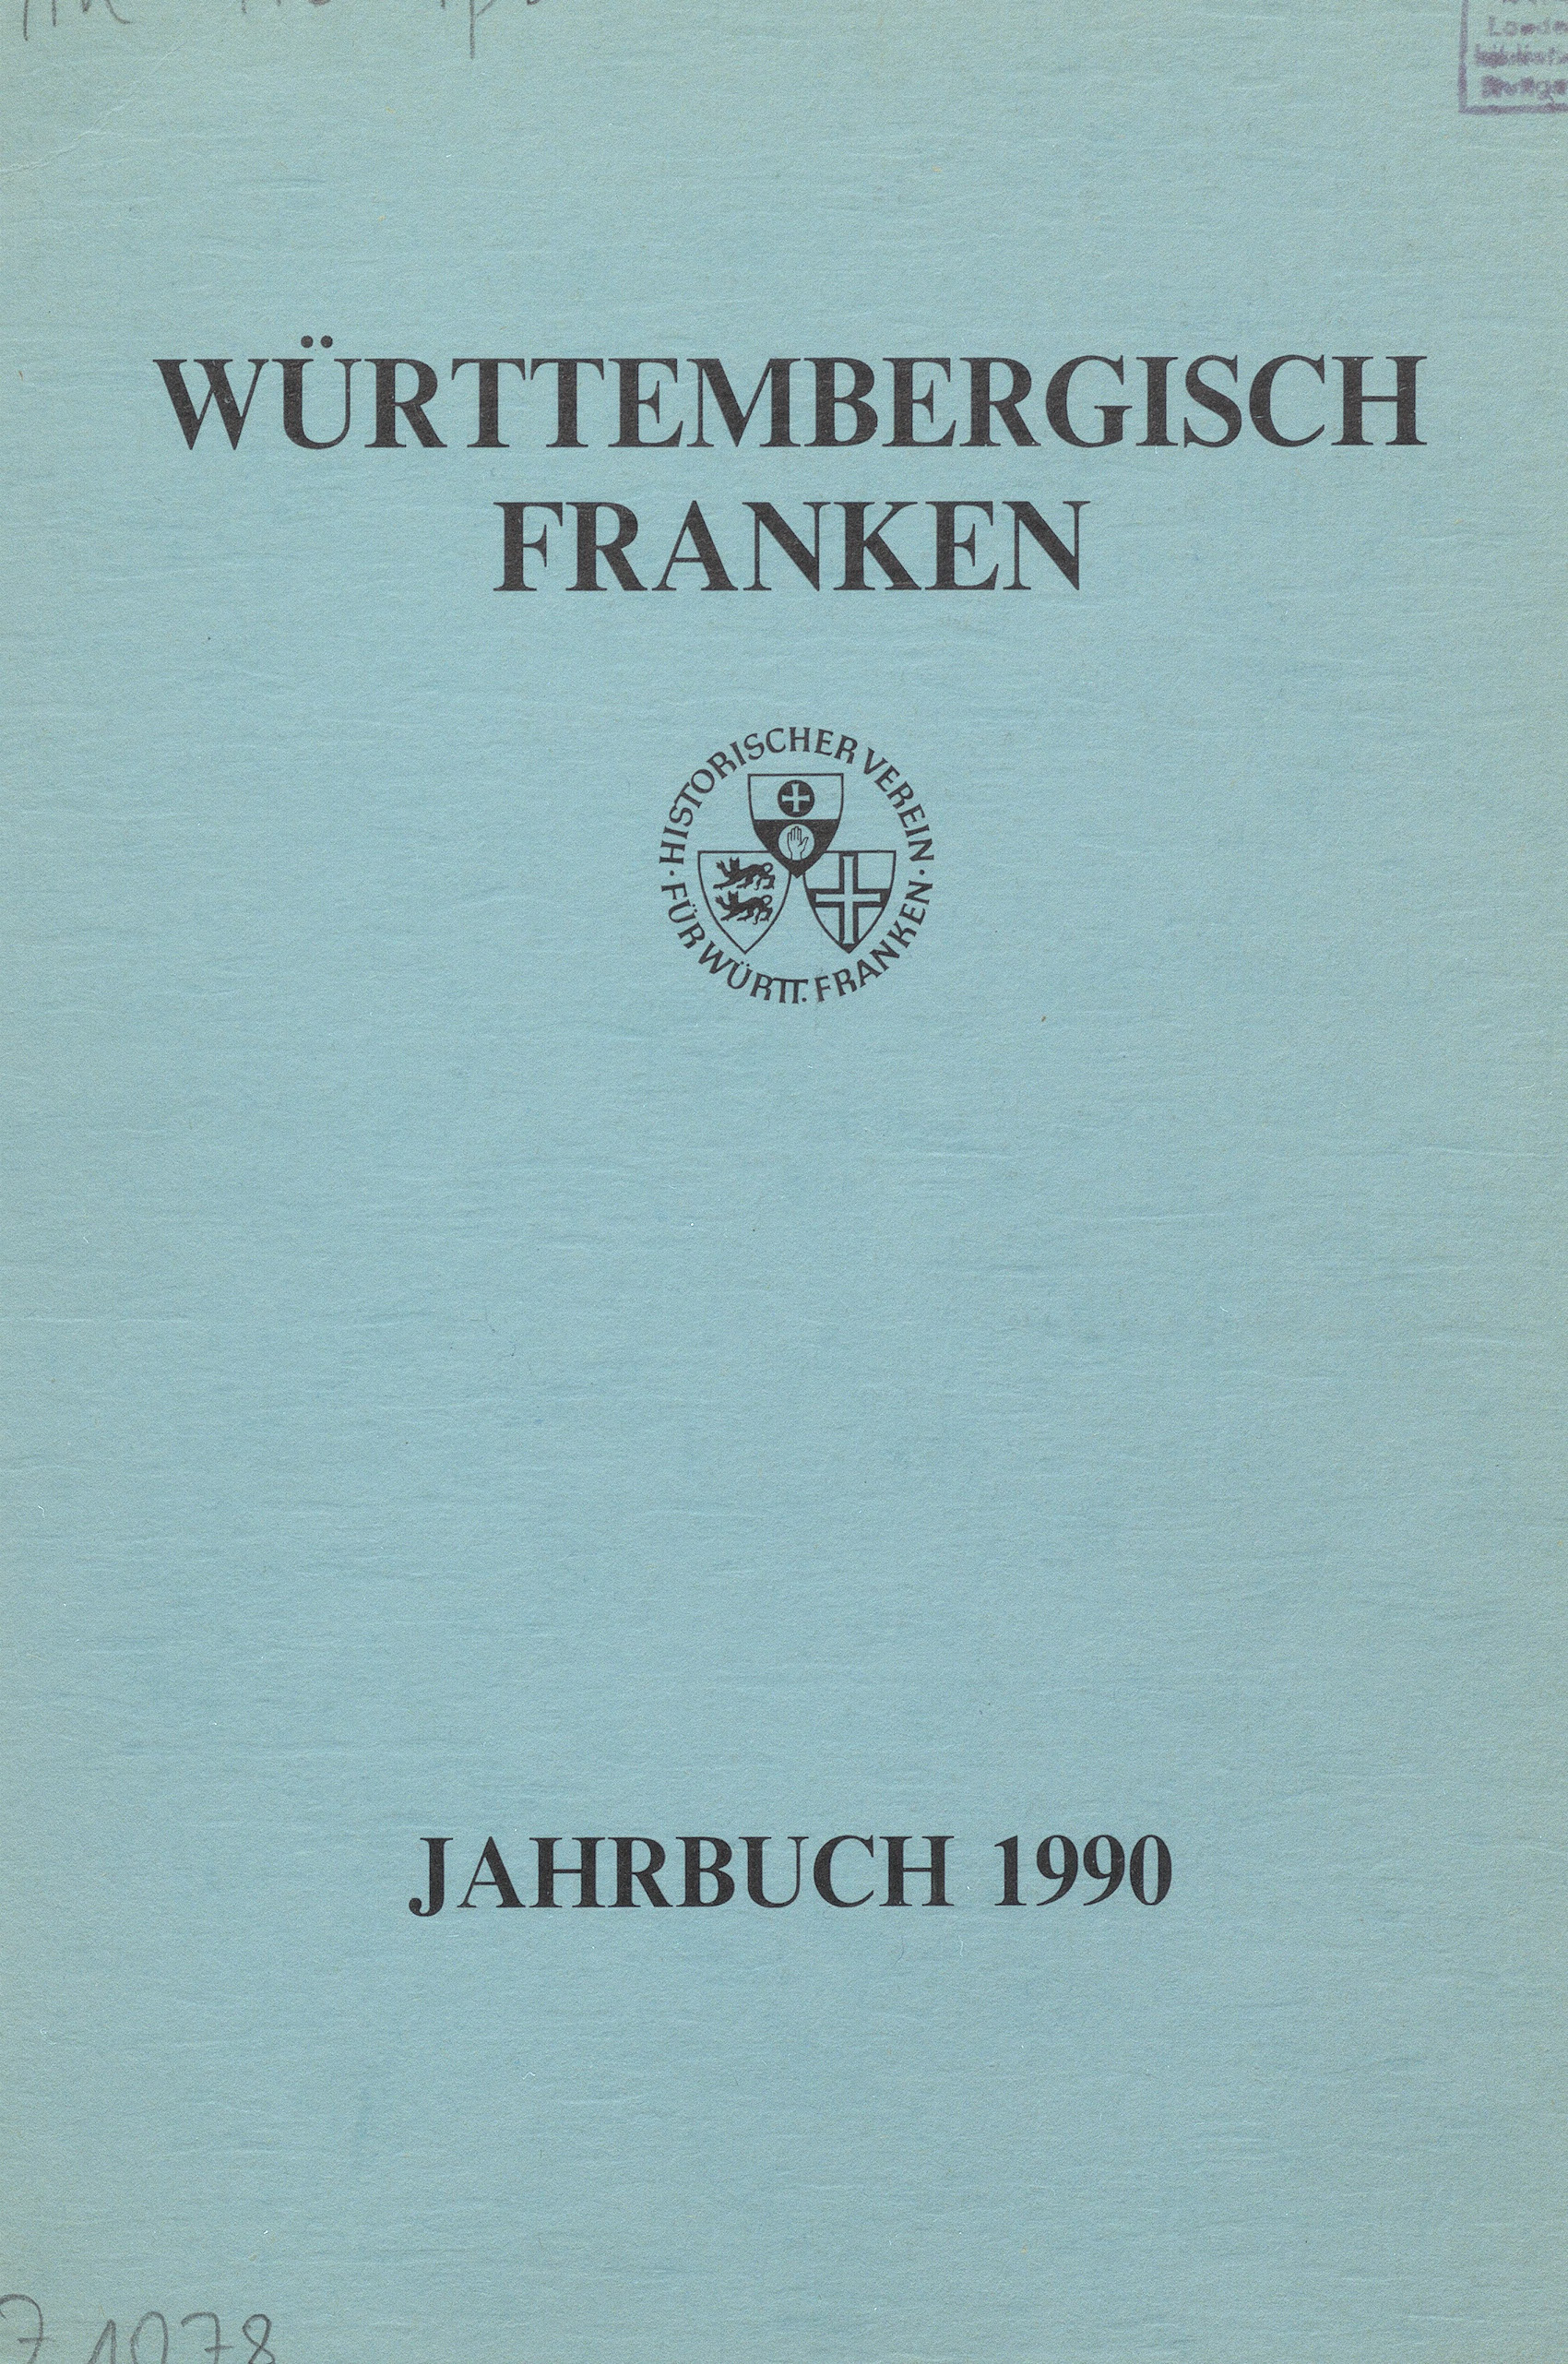                     Ansehen Bd. 74 (1990): Württembergisch Franken
                